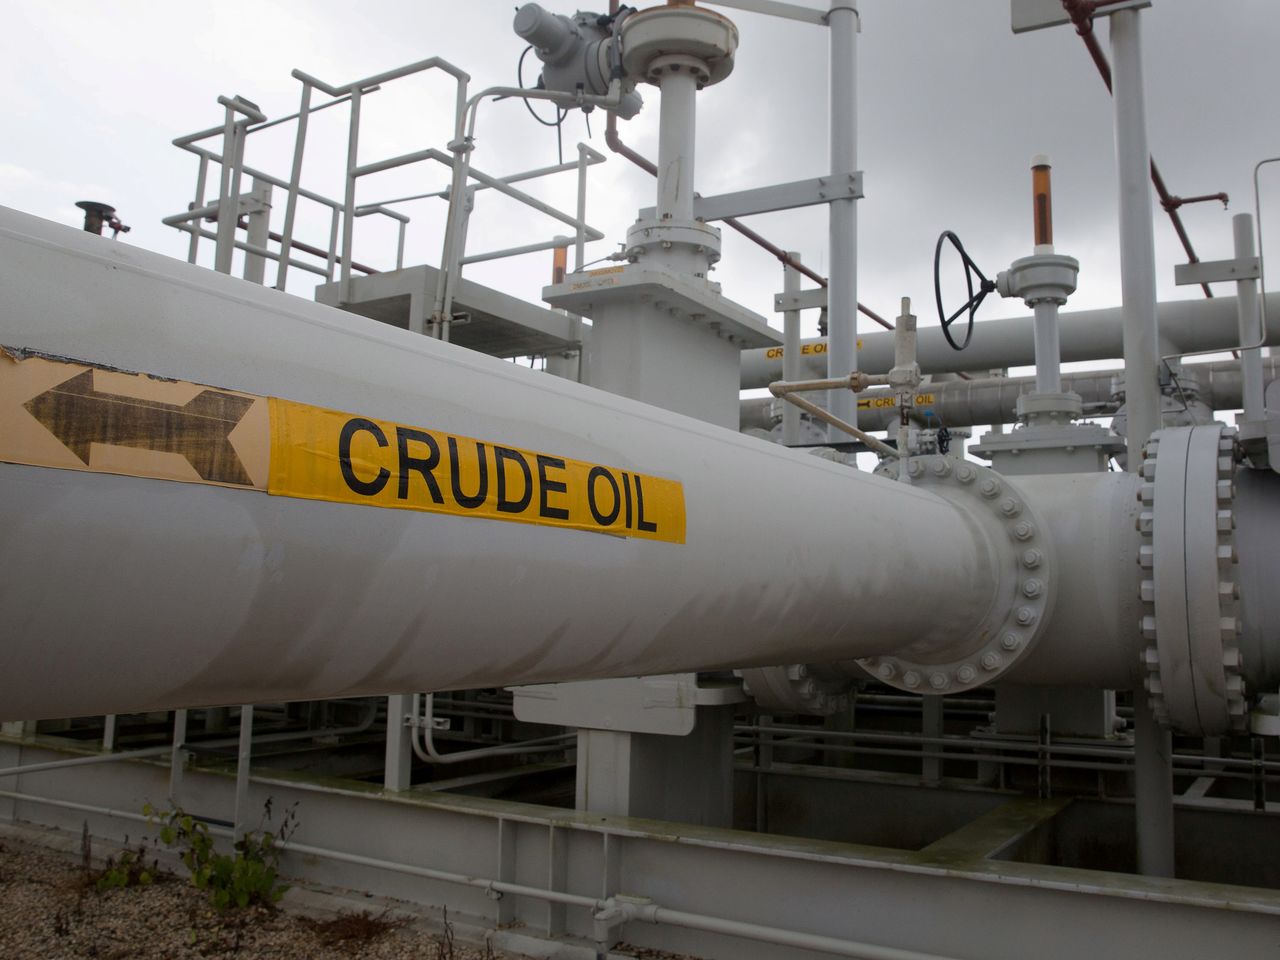 FOTO DE ARCHIVO: Conjunto de de válvulas y tuberías de petróleo en Freeport, estado de Texas, Estados Unidos, el 9 de junio de 2016. REUTERS/Richard Carson